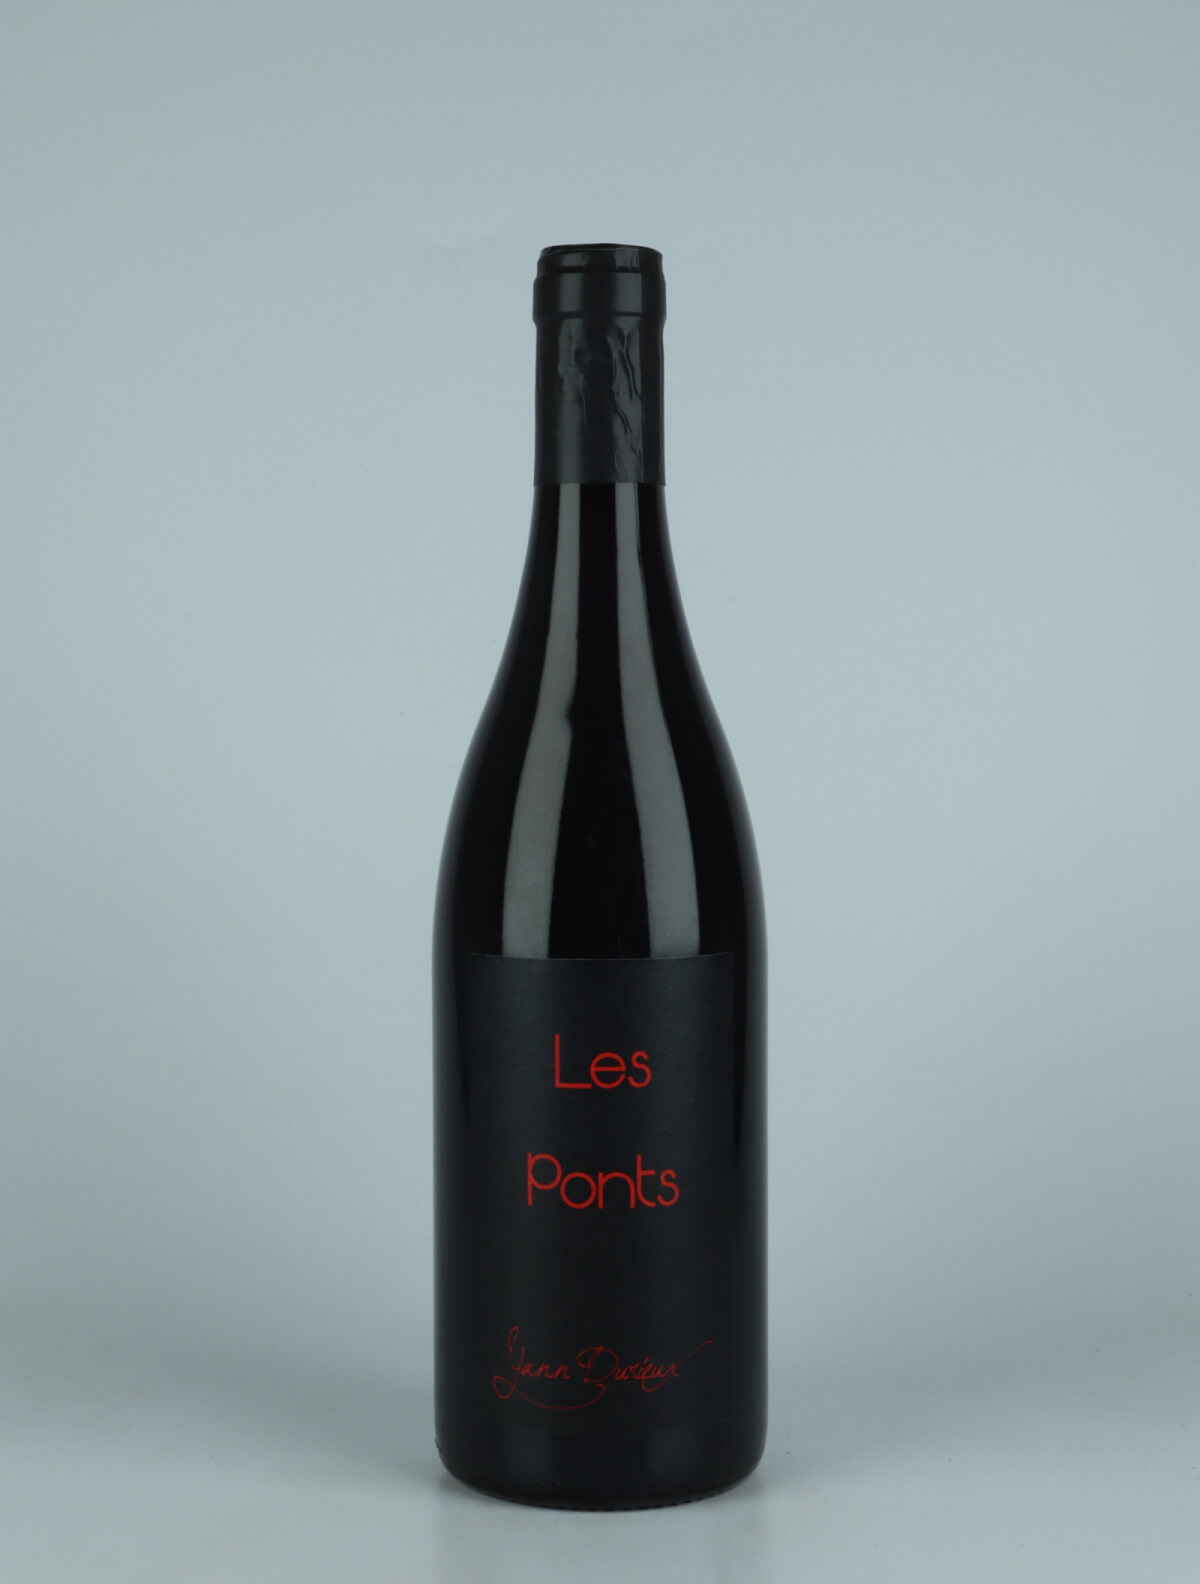 En flaske 2021 Les Ponts Rødvin fra Yann Durieux, Bourgogne i Frankrig